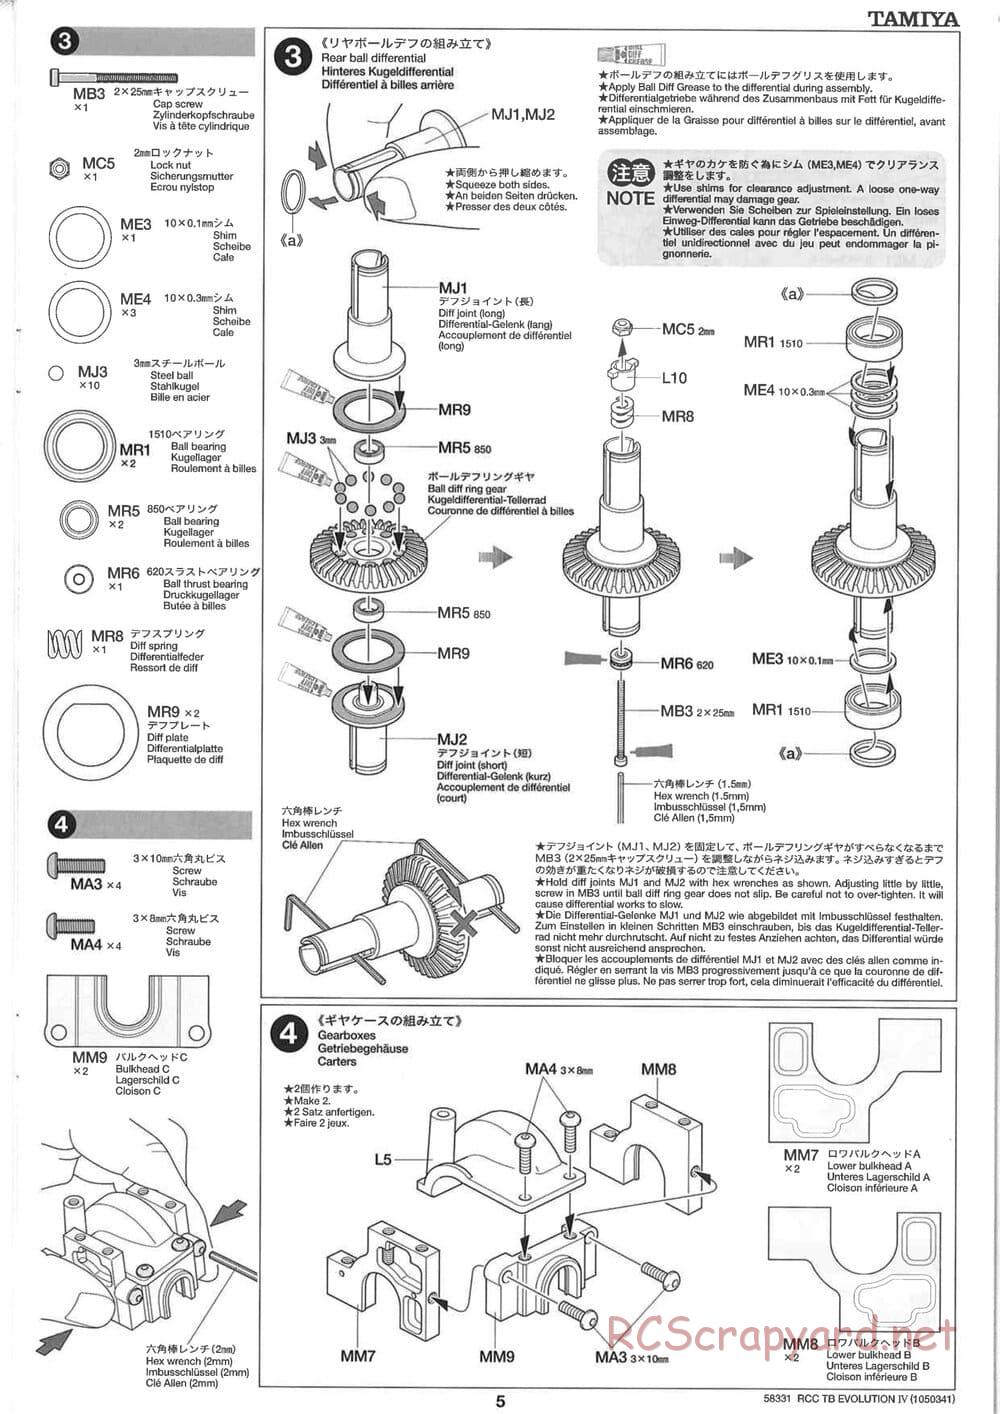 Tamiya - TB Evolution IV Chassis - Manual - Page 5